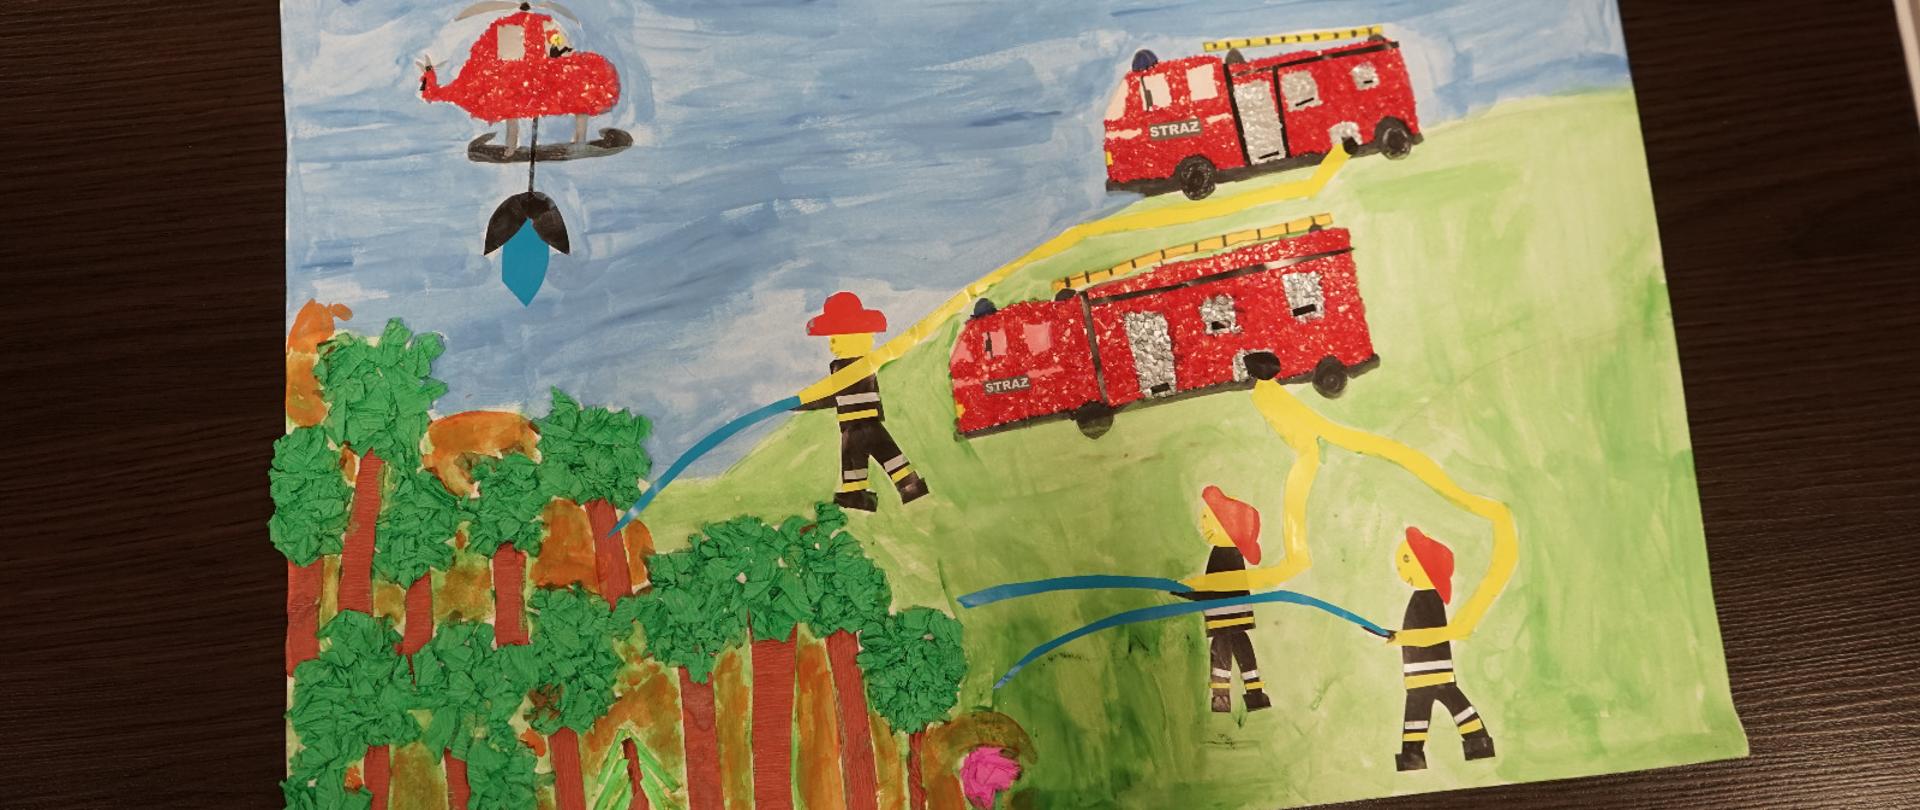 Zdjęcie robione dla obrazka wykonanego przez dzieci. Na obrazku strażacy walczą z pożarem. Na zielonej łącze stoją dwa samochody strażackie i trzech strażaków. Na niebieskim niebie leci śmigłowiec strażacki.